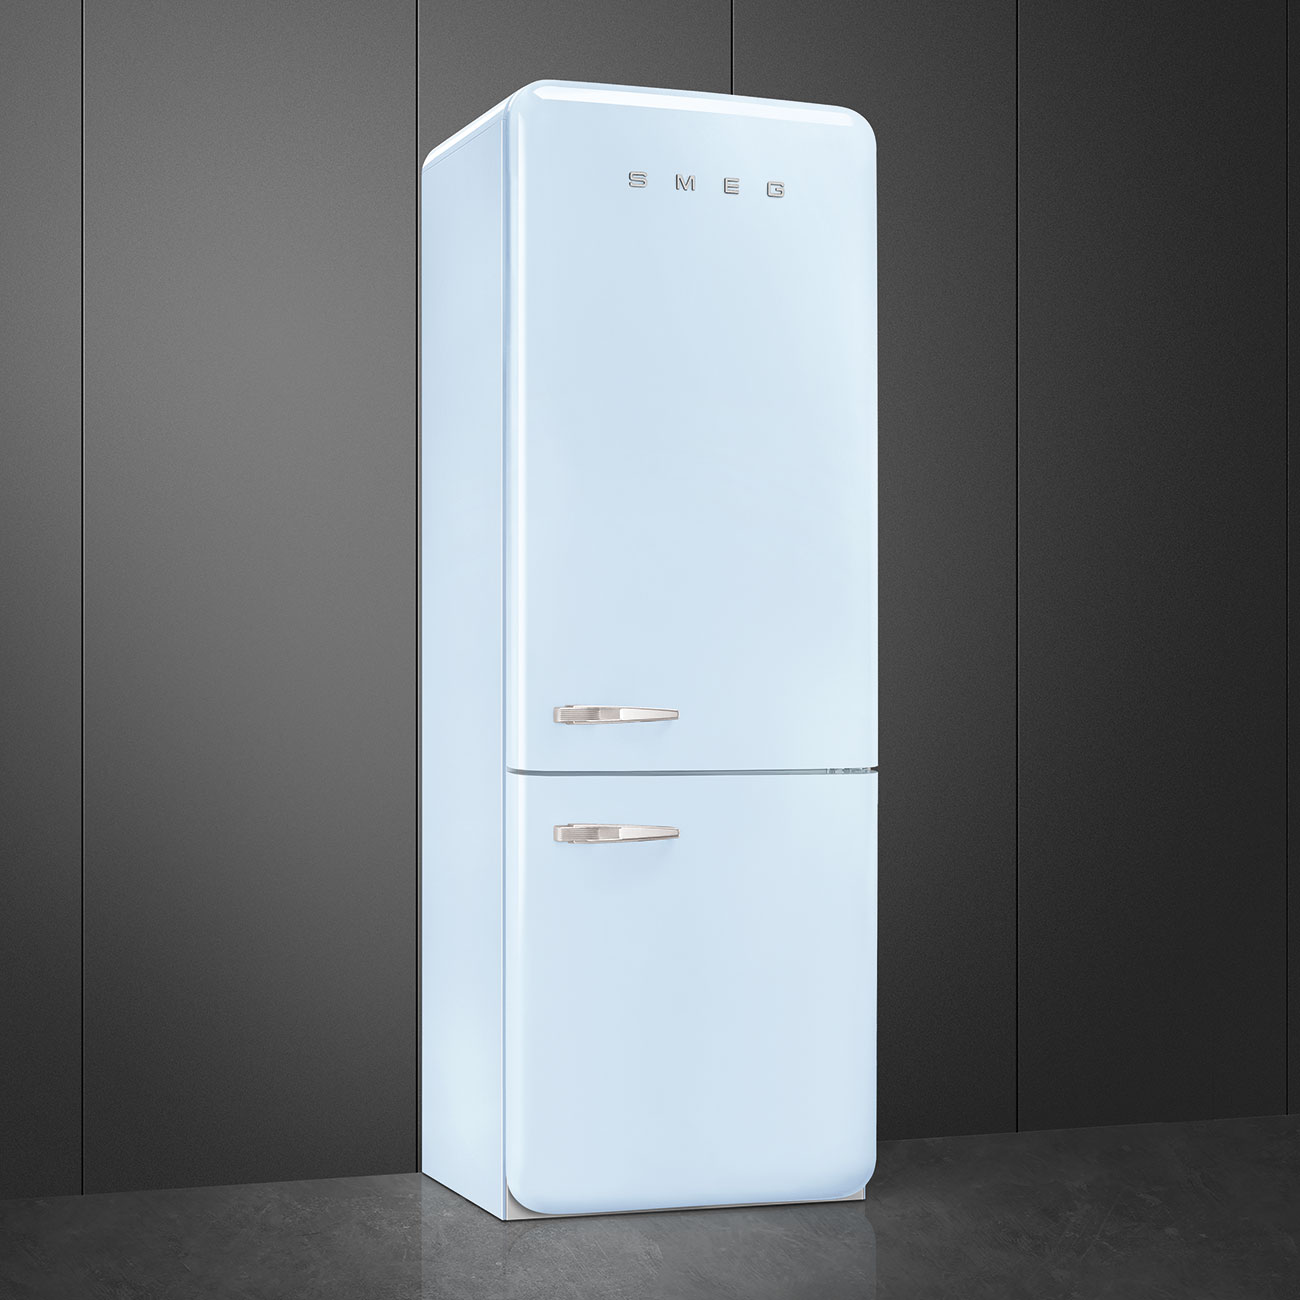 Pastel blue refrigerator - Smeg_3